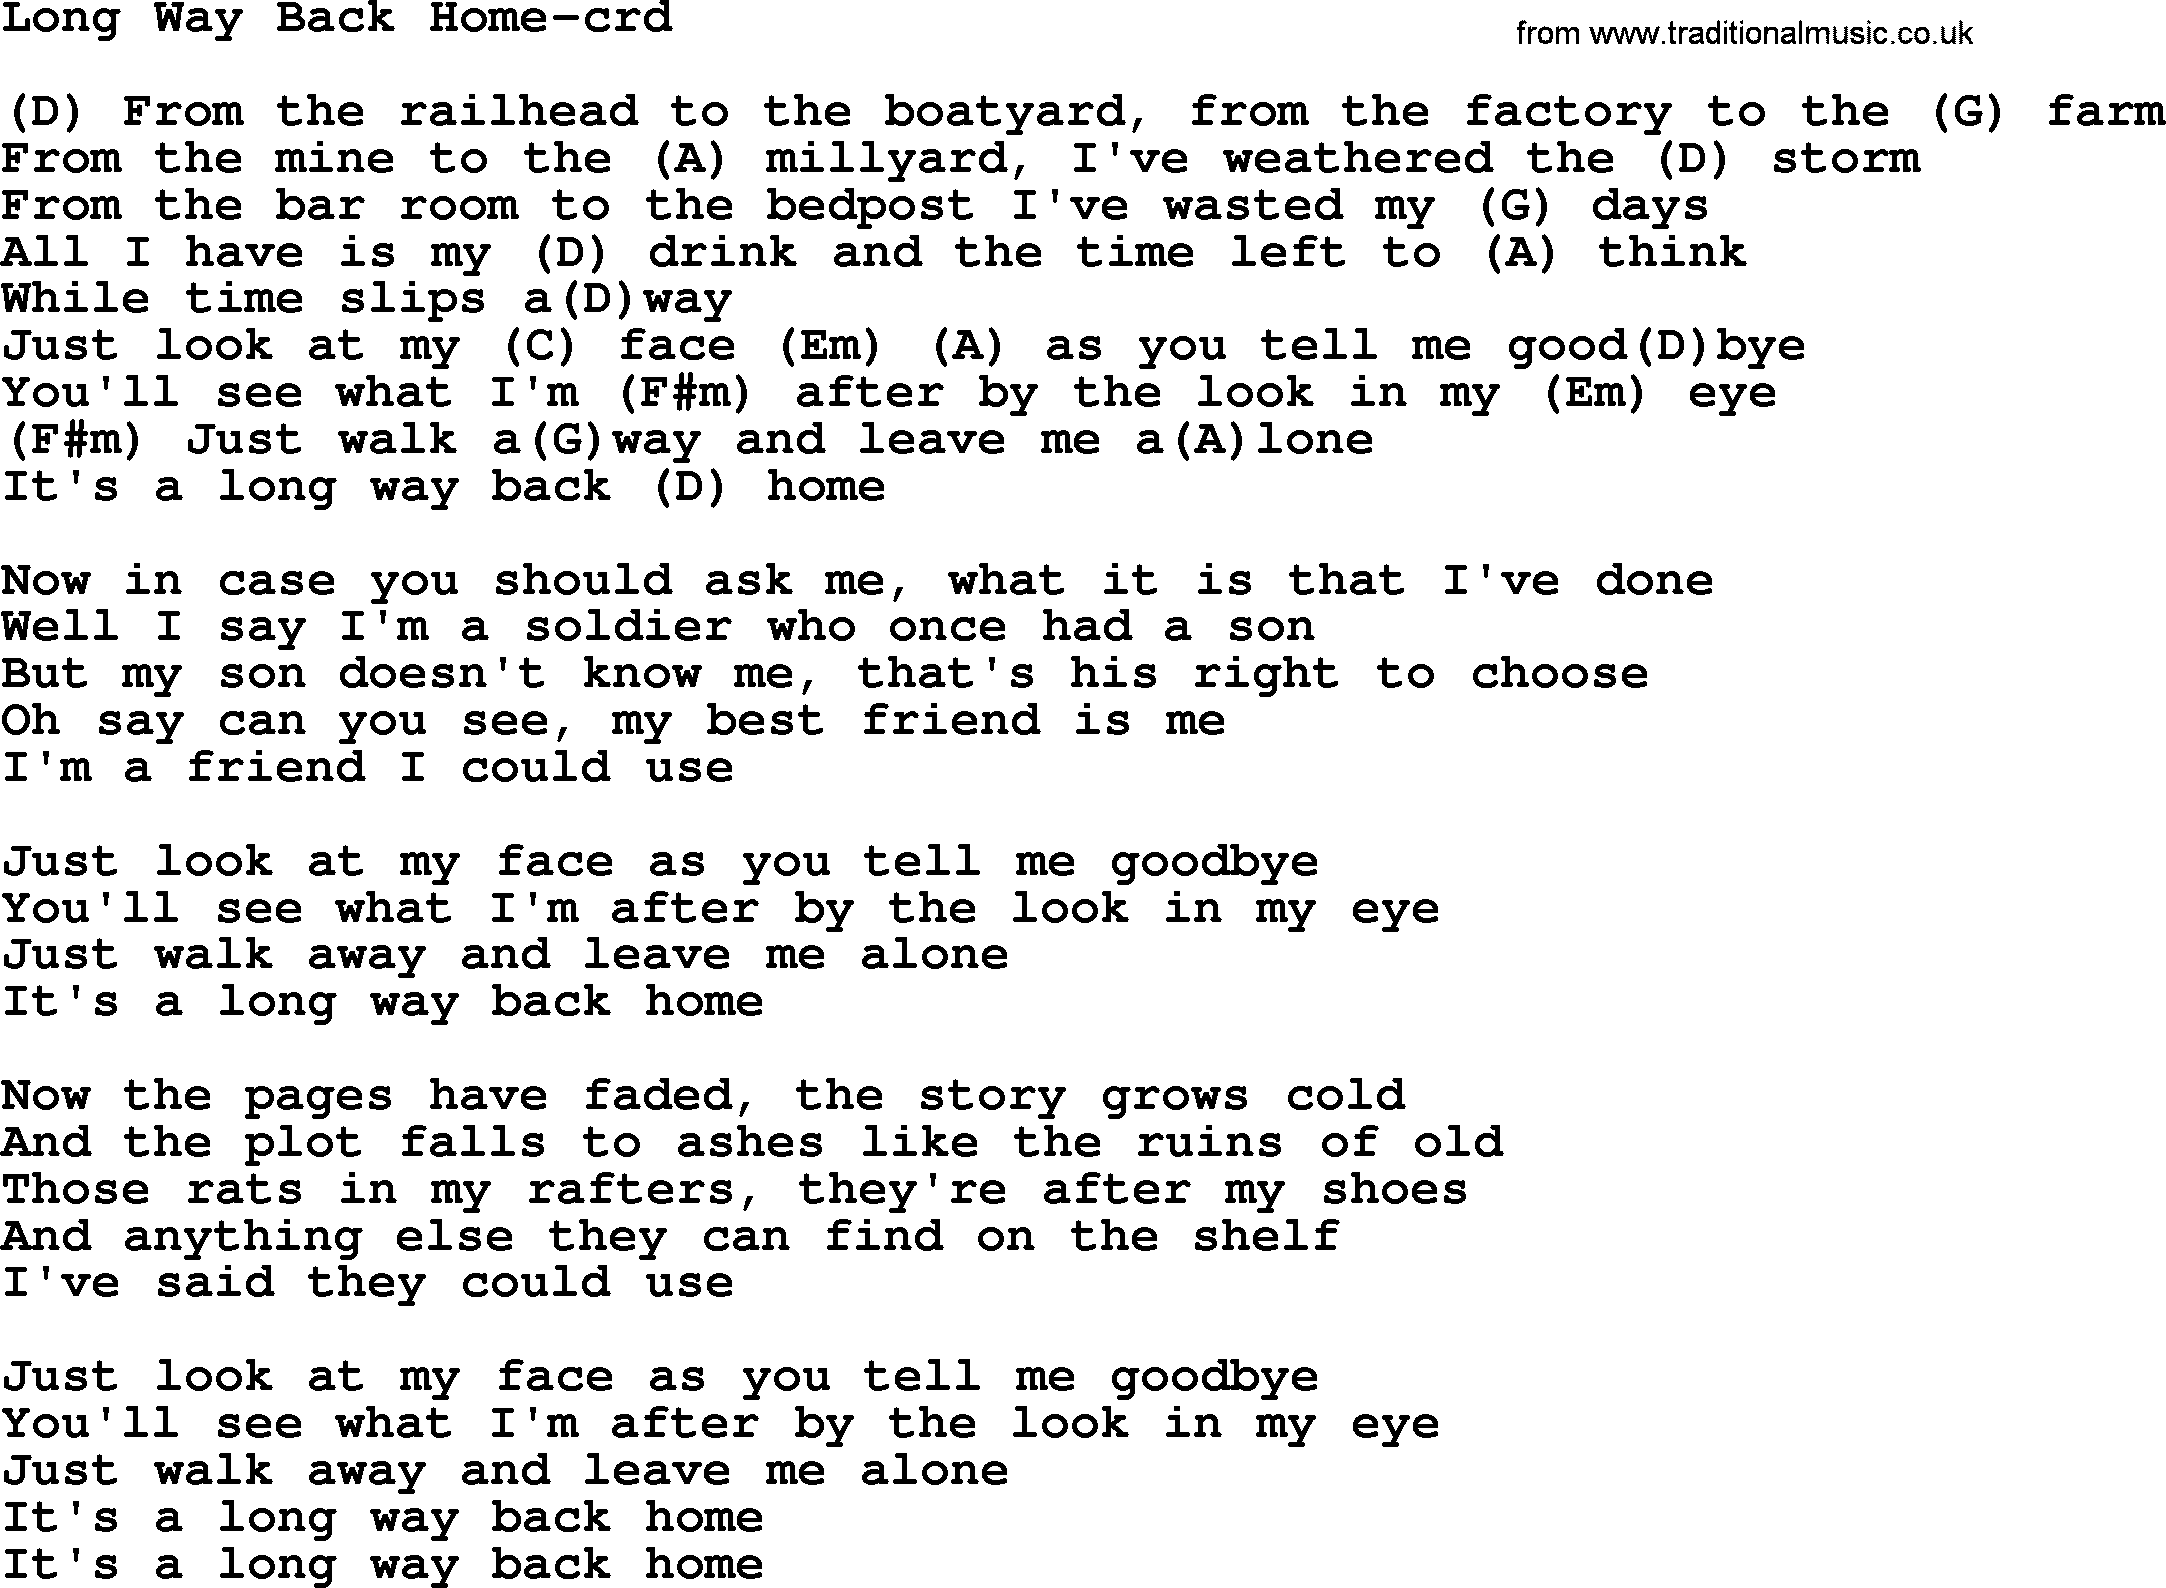 Gordon Lightfoot song Long Way Back Home, lyrics and chords